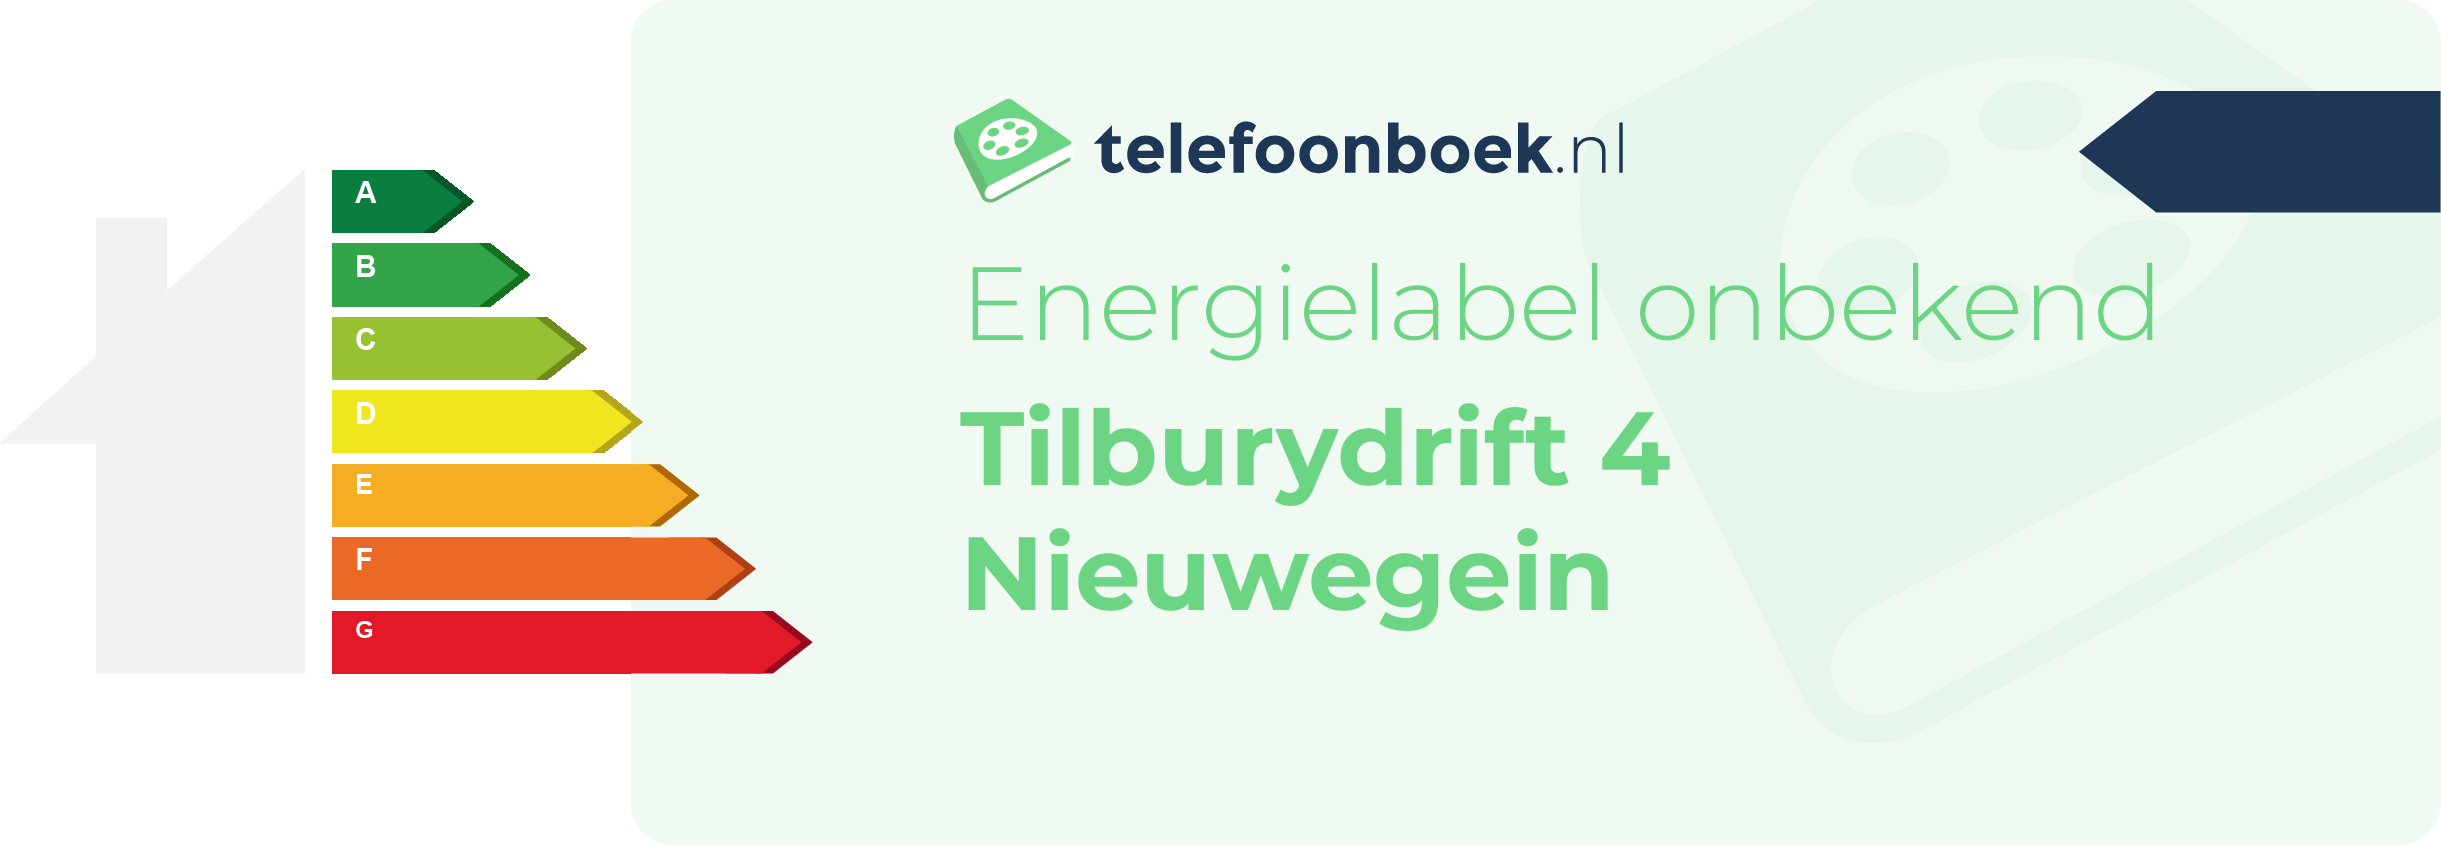 Energielabel Tilburydrift 4 Nieuwegein